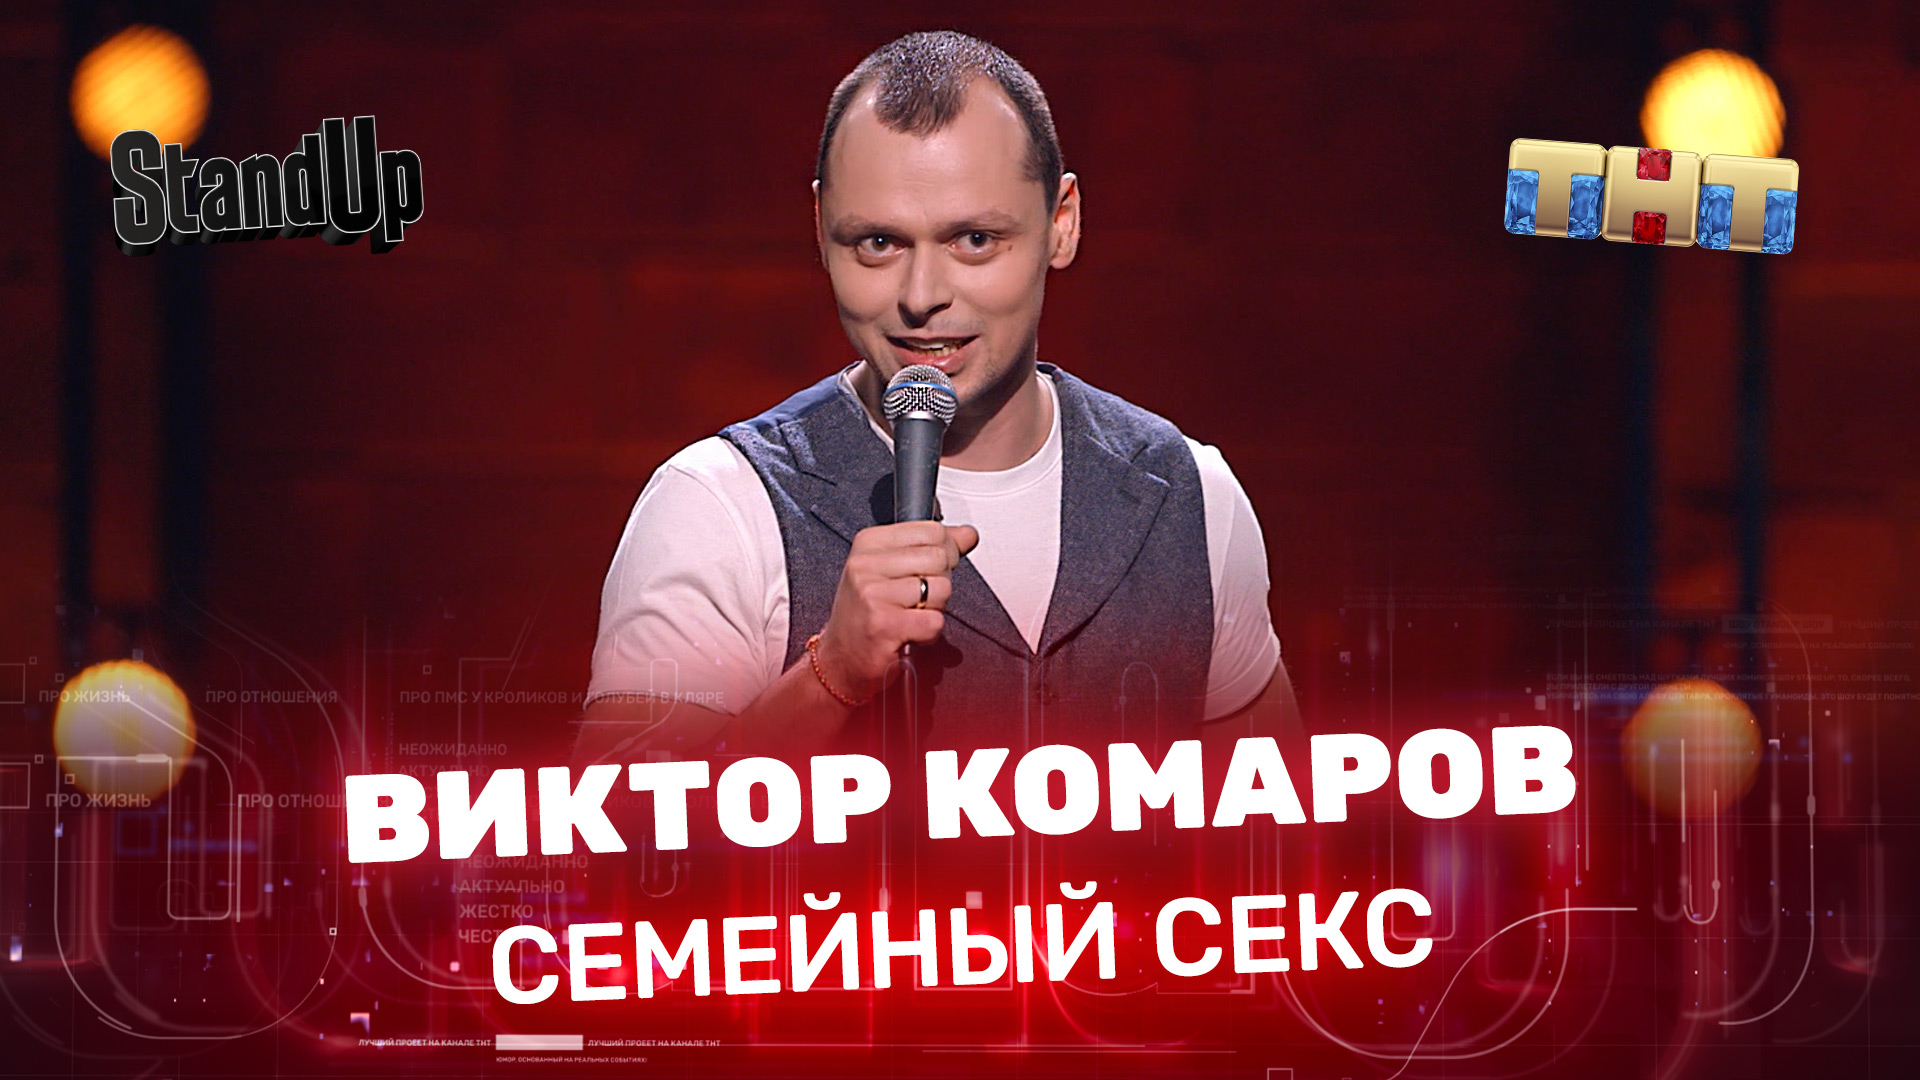 Stand Up: Виктор Комаров - Cемейный секс